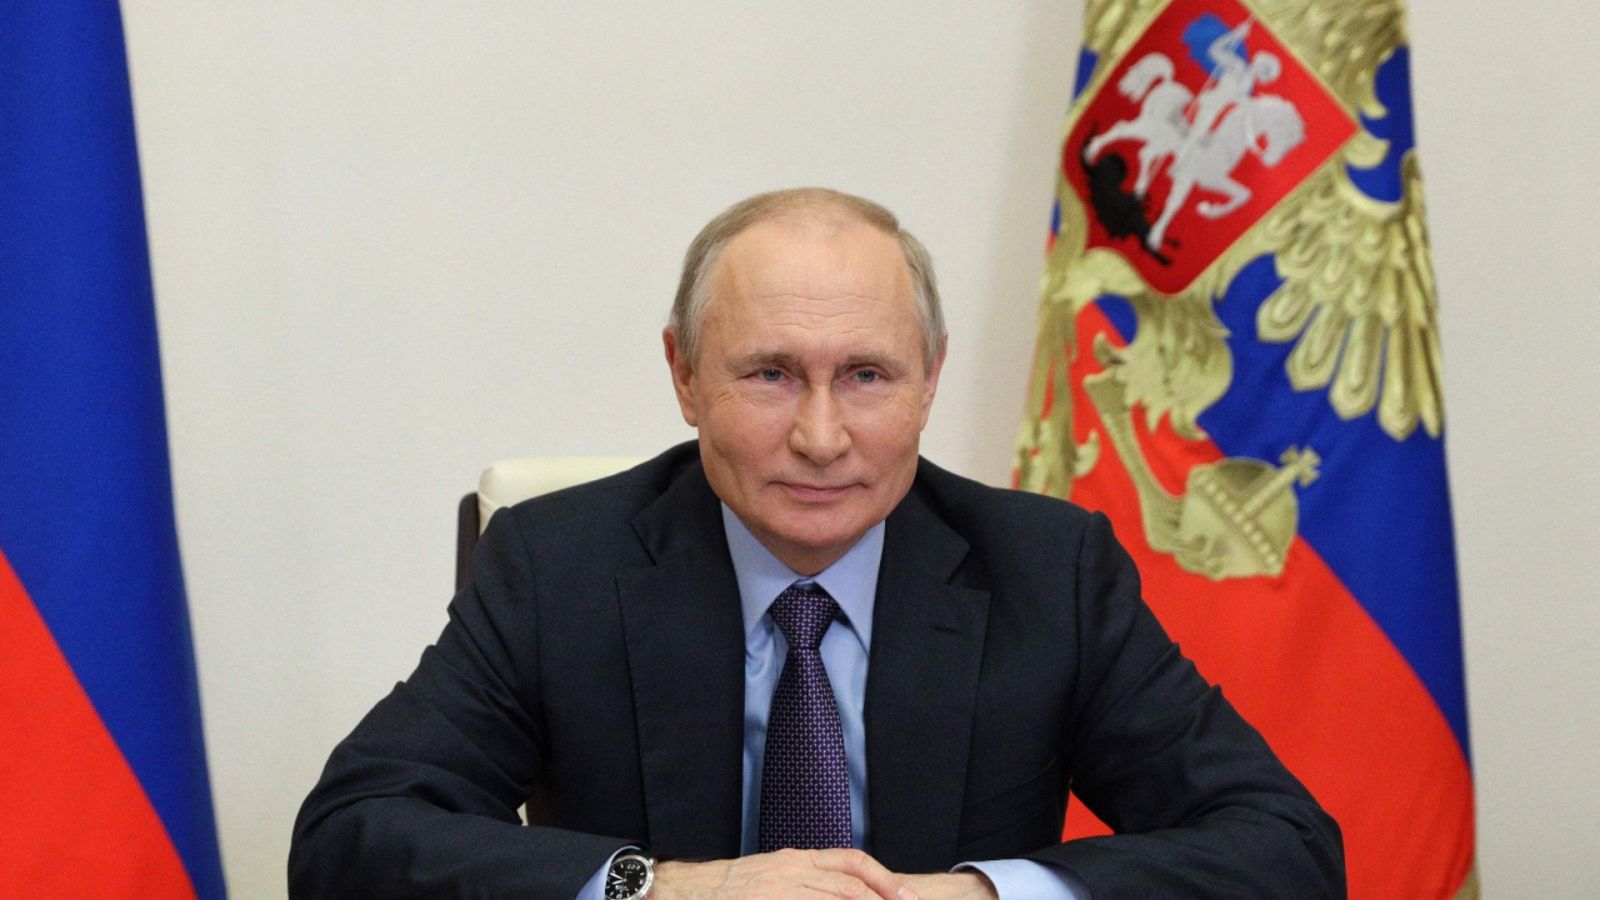 Una imagen del presidente de Rusia, Vladimir Putin, durante una videoconferencia el 9 de junio de 2021.